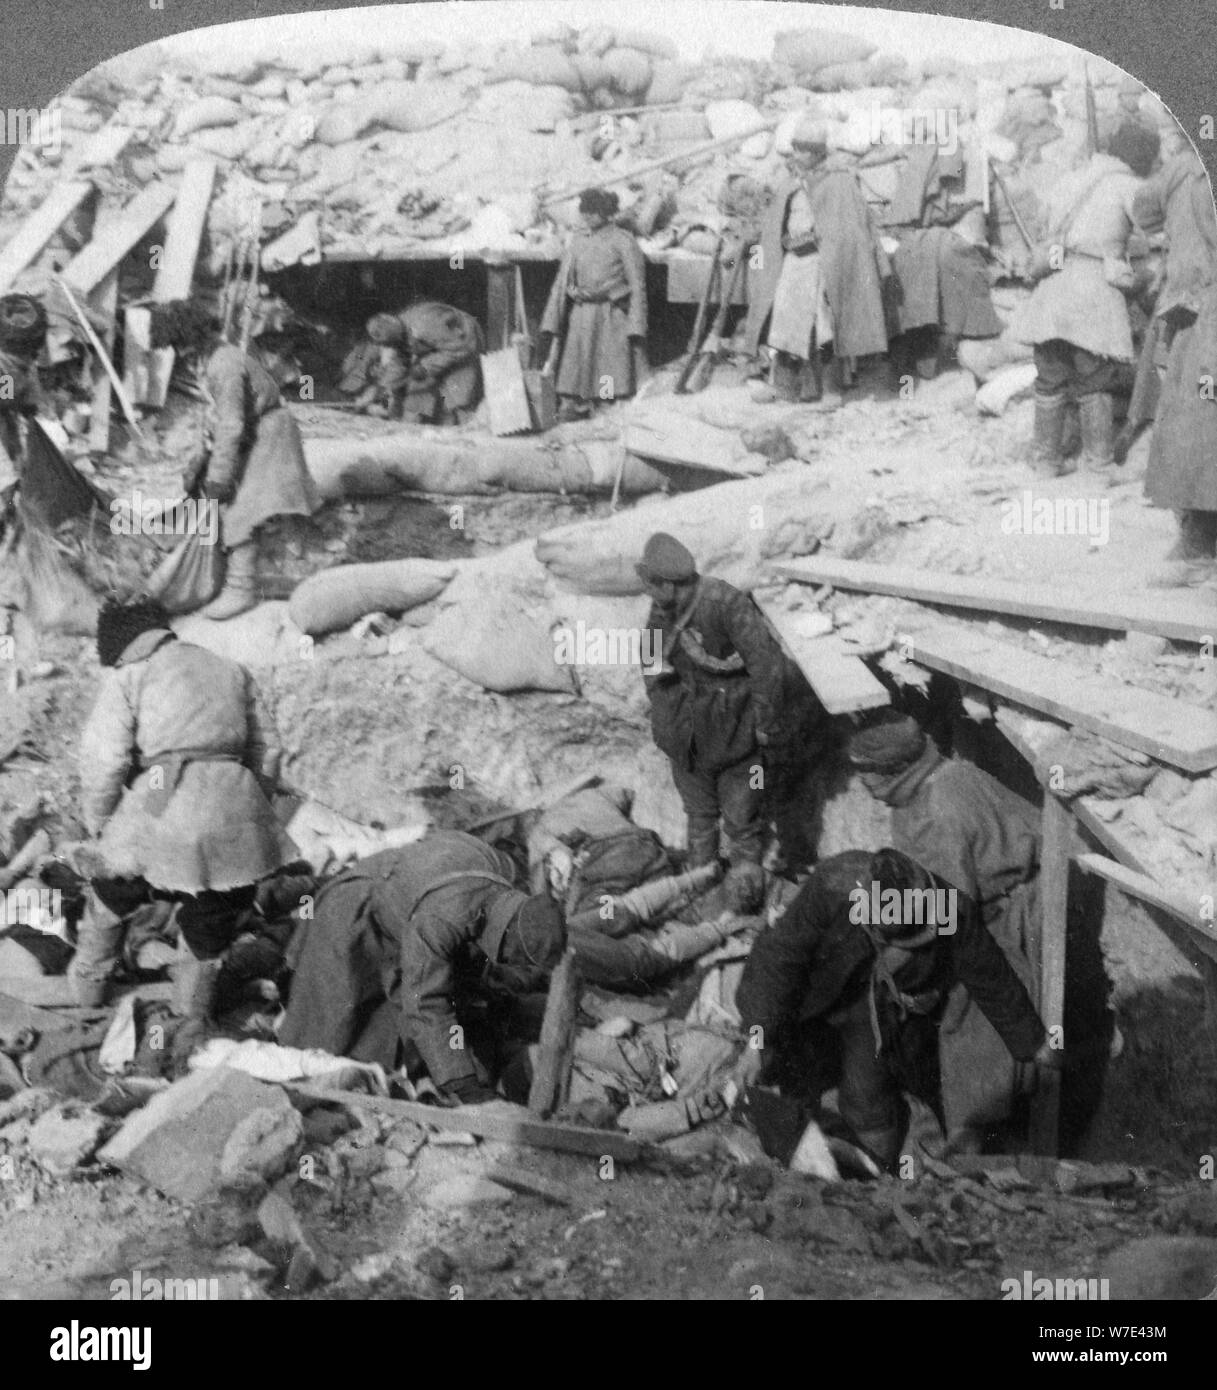 Russen begraben Japanische tot in einem fort, Port Arthur, der Mandschurei, Russisch-japanischen Krieg von 1905. Artist: Underwood & Underwood Stockfoto